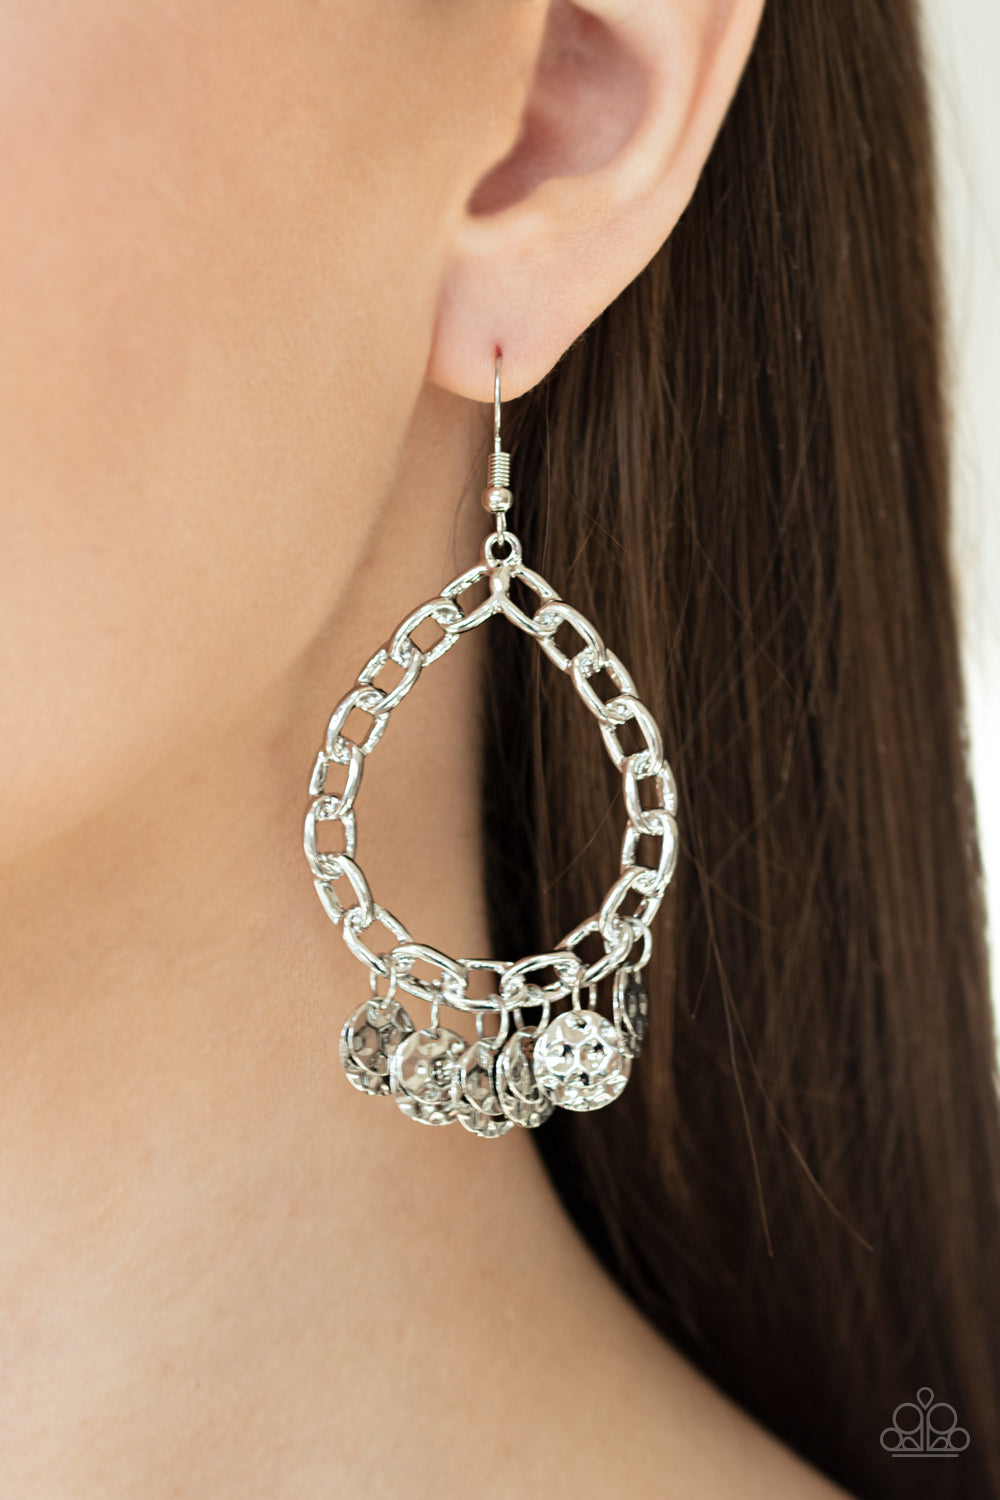 Paparazzi Street Appeal - Silver - Hammered Discs - Teardrop Earrings - $5 Jewelry with Ashley Swint